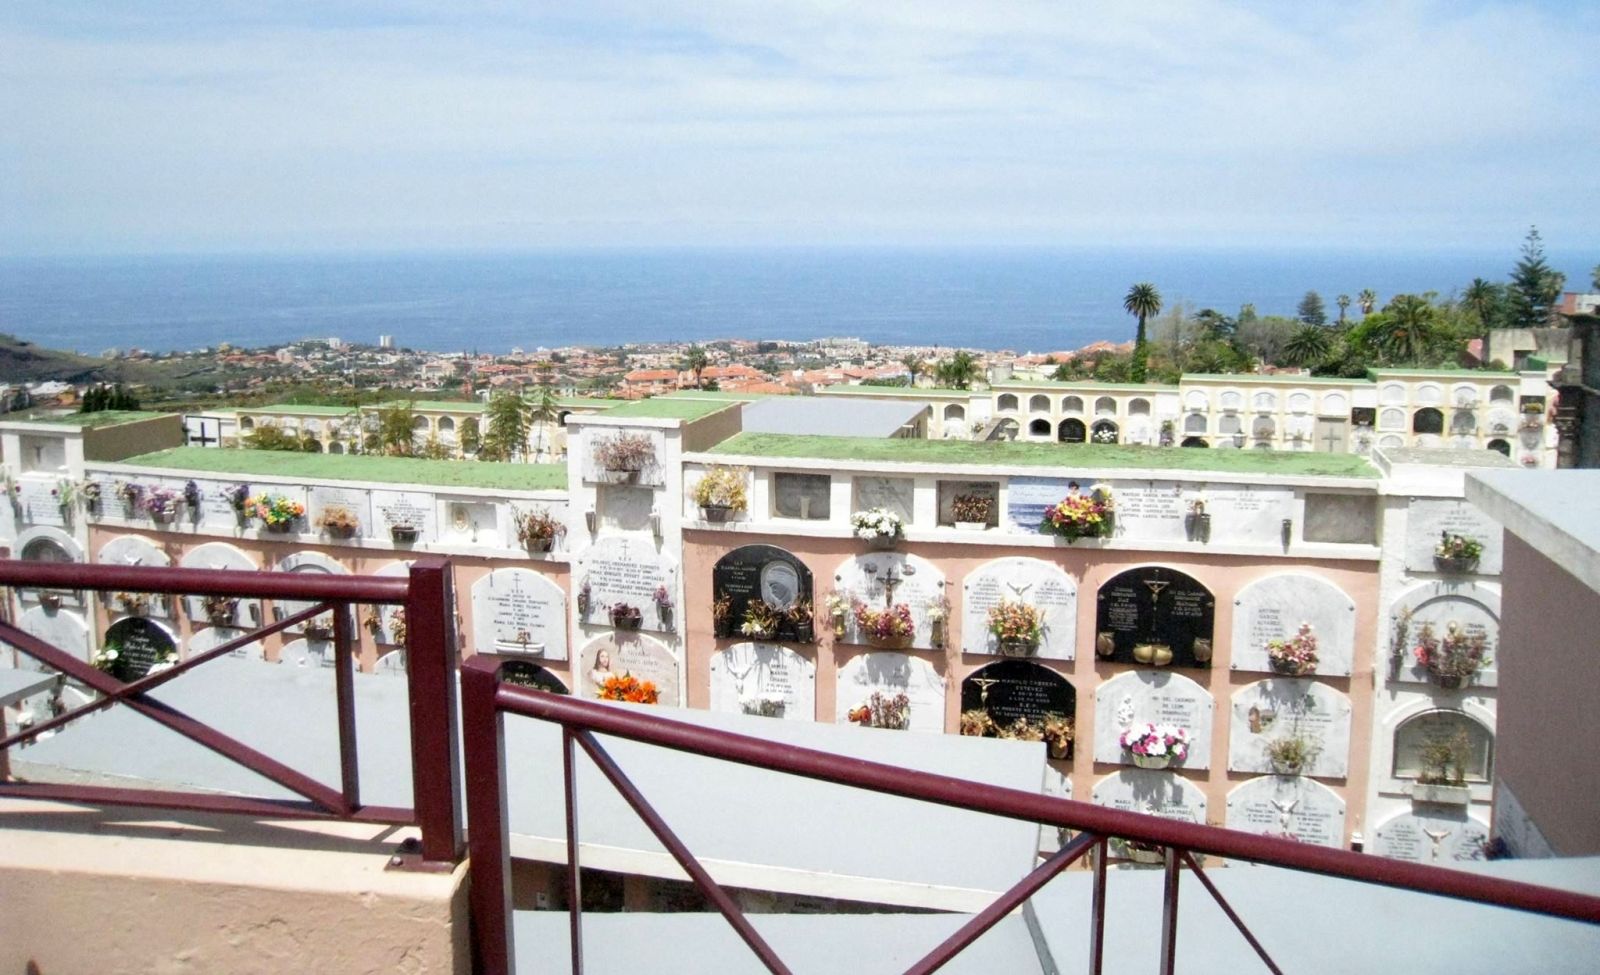 Многоэтажное кладбище на Тенерифе, Канарские острова, Испания. Фото: Людмила Крылова / Ракурс